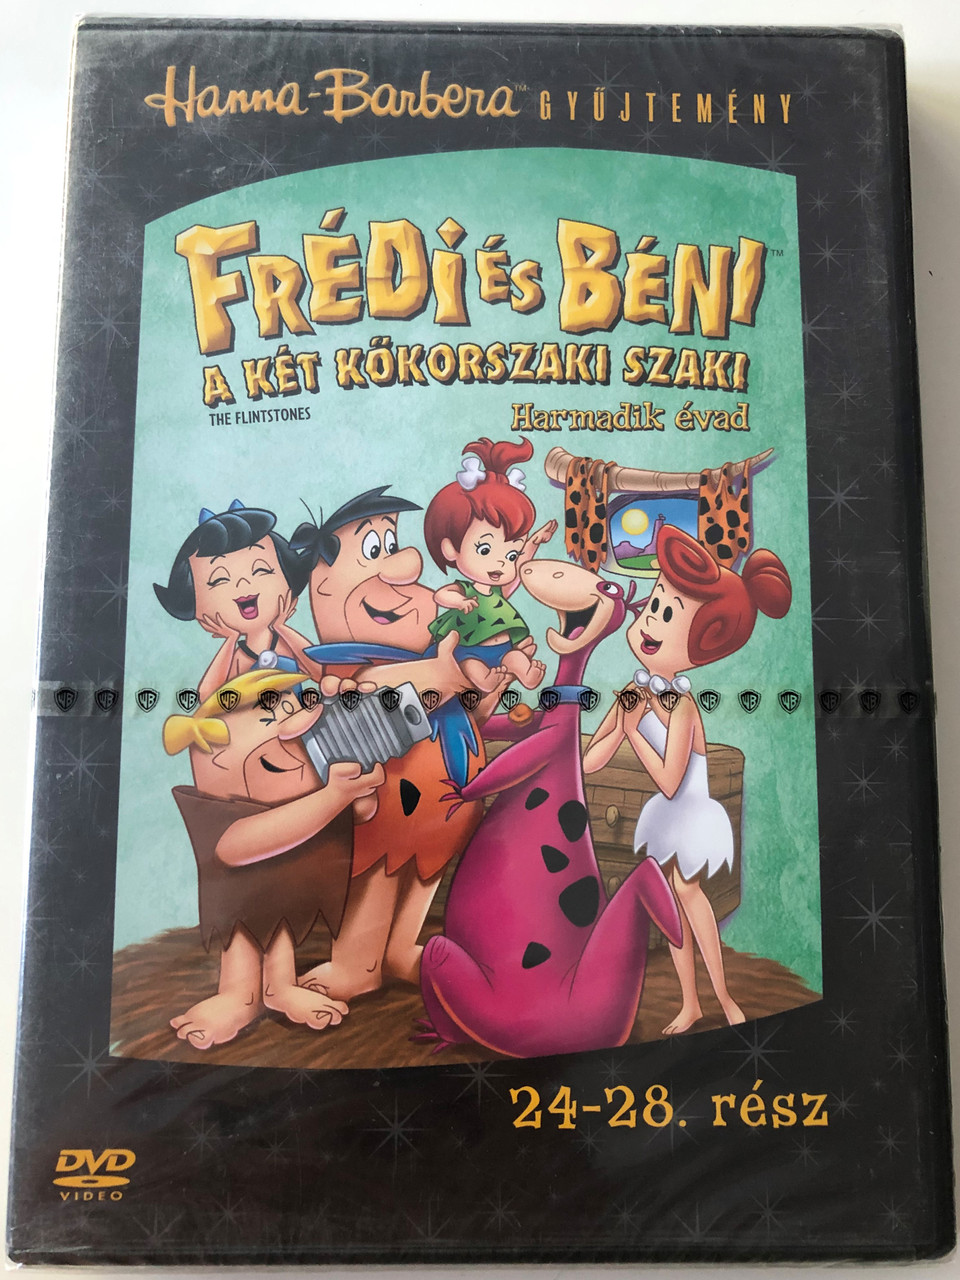 The Flintstones Season 3 DVD Frédi és Béni Harmadik évad / Episodes 24-28  rész / Hanna-Barbera / Animated Classic / Disc 5. Lemez - bibleinmylanguage